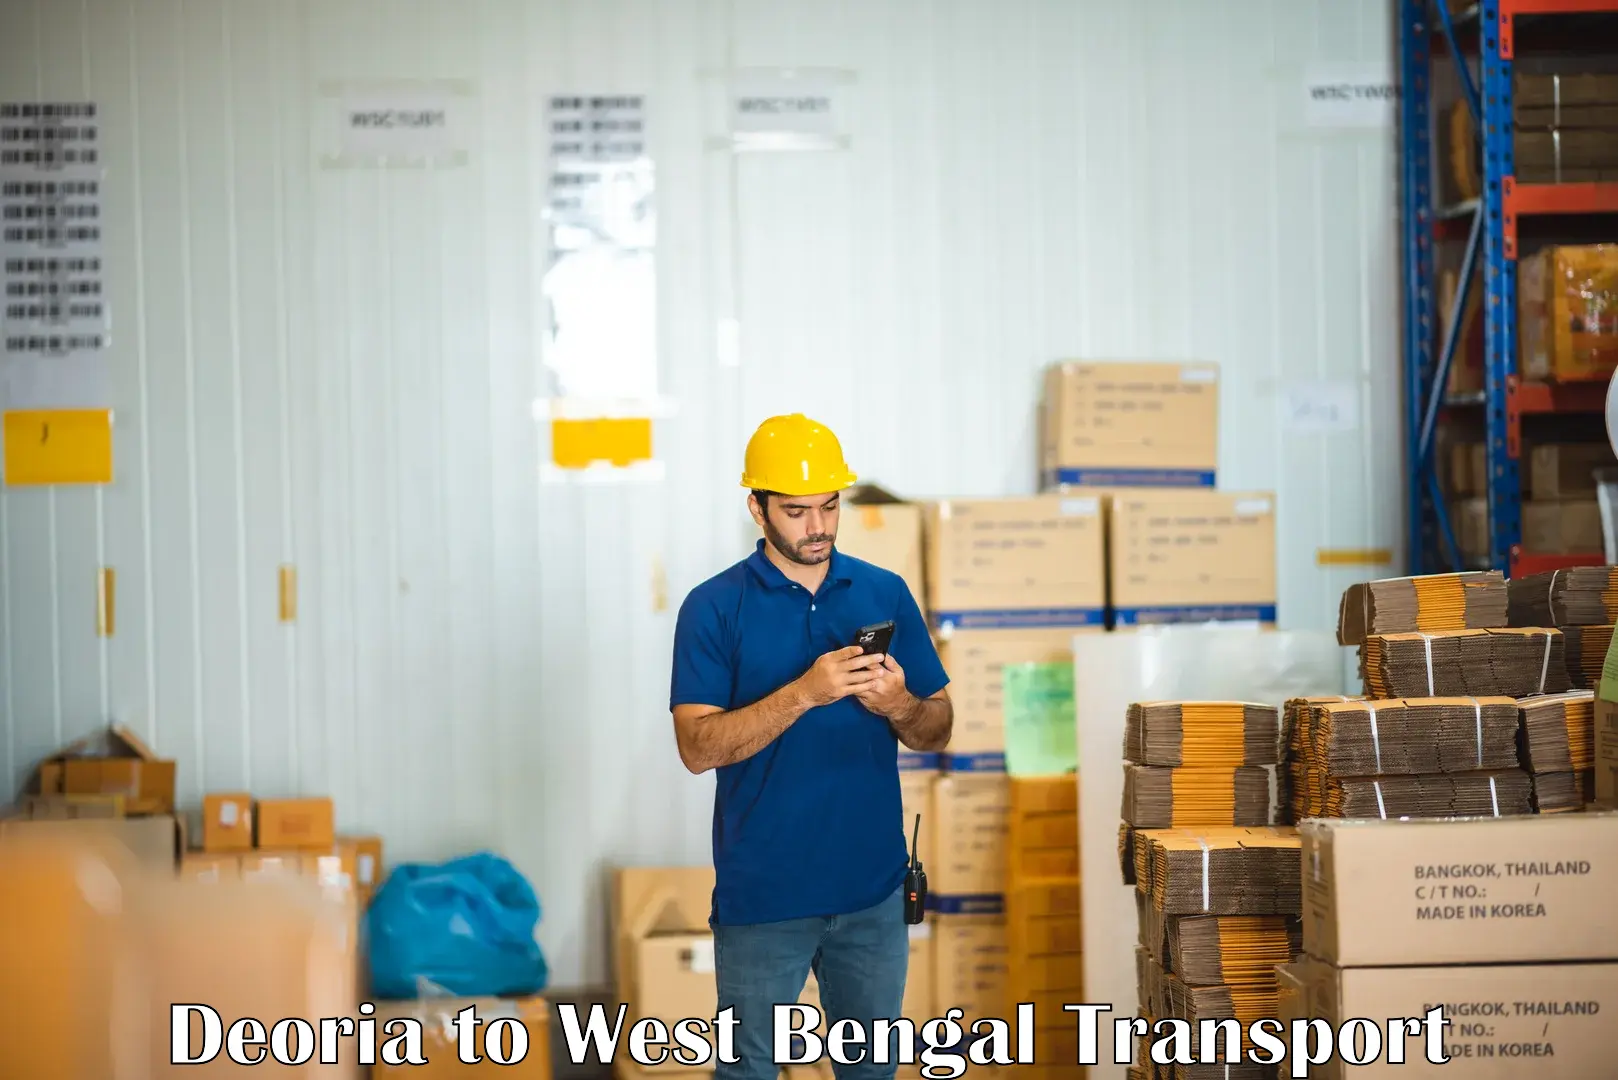 Shipping partner Deoria to Baneswar